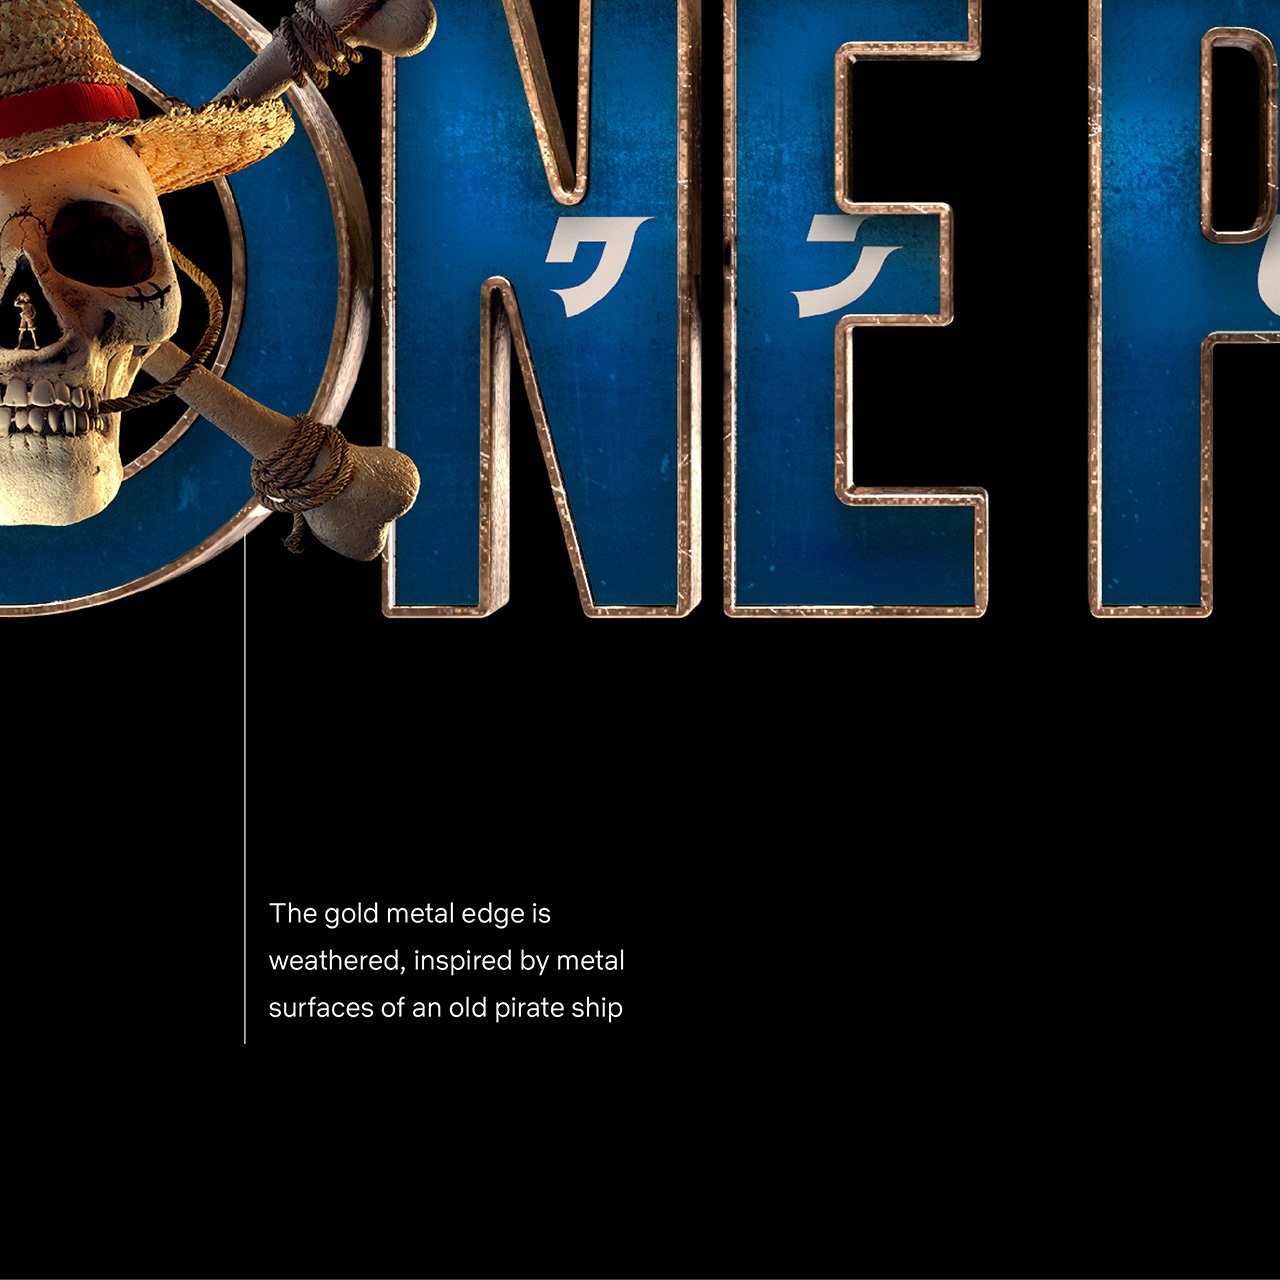 One Piece: Netflix revela logo da série live action e título do